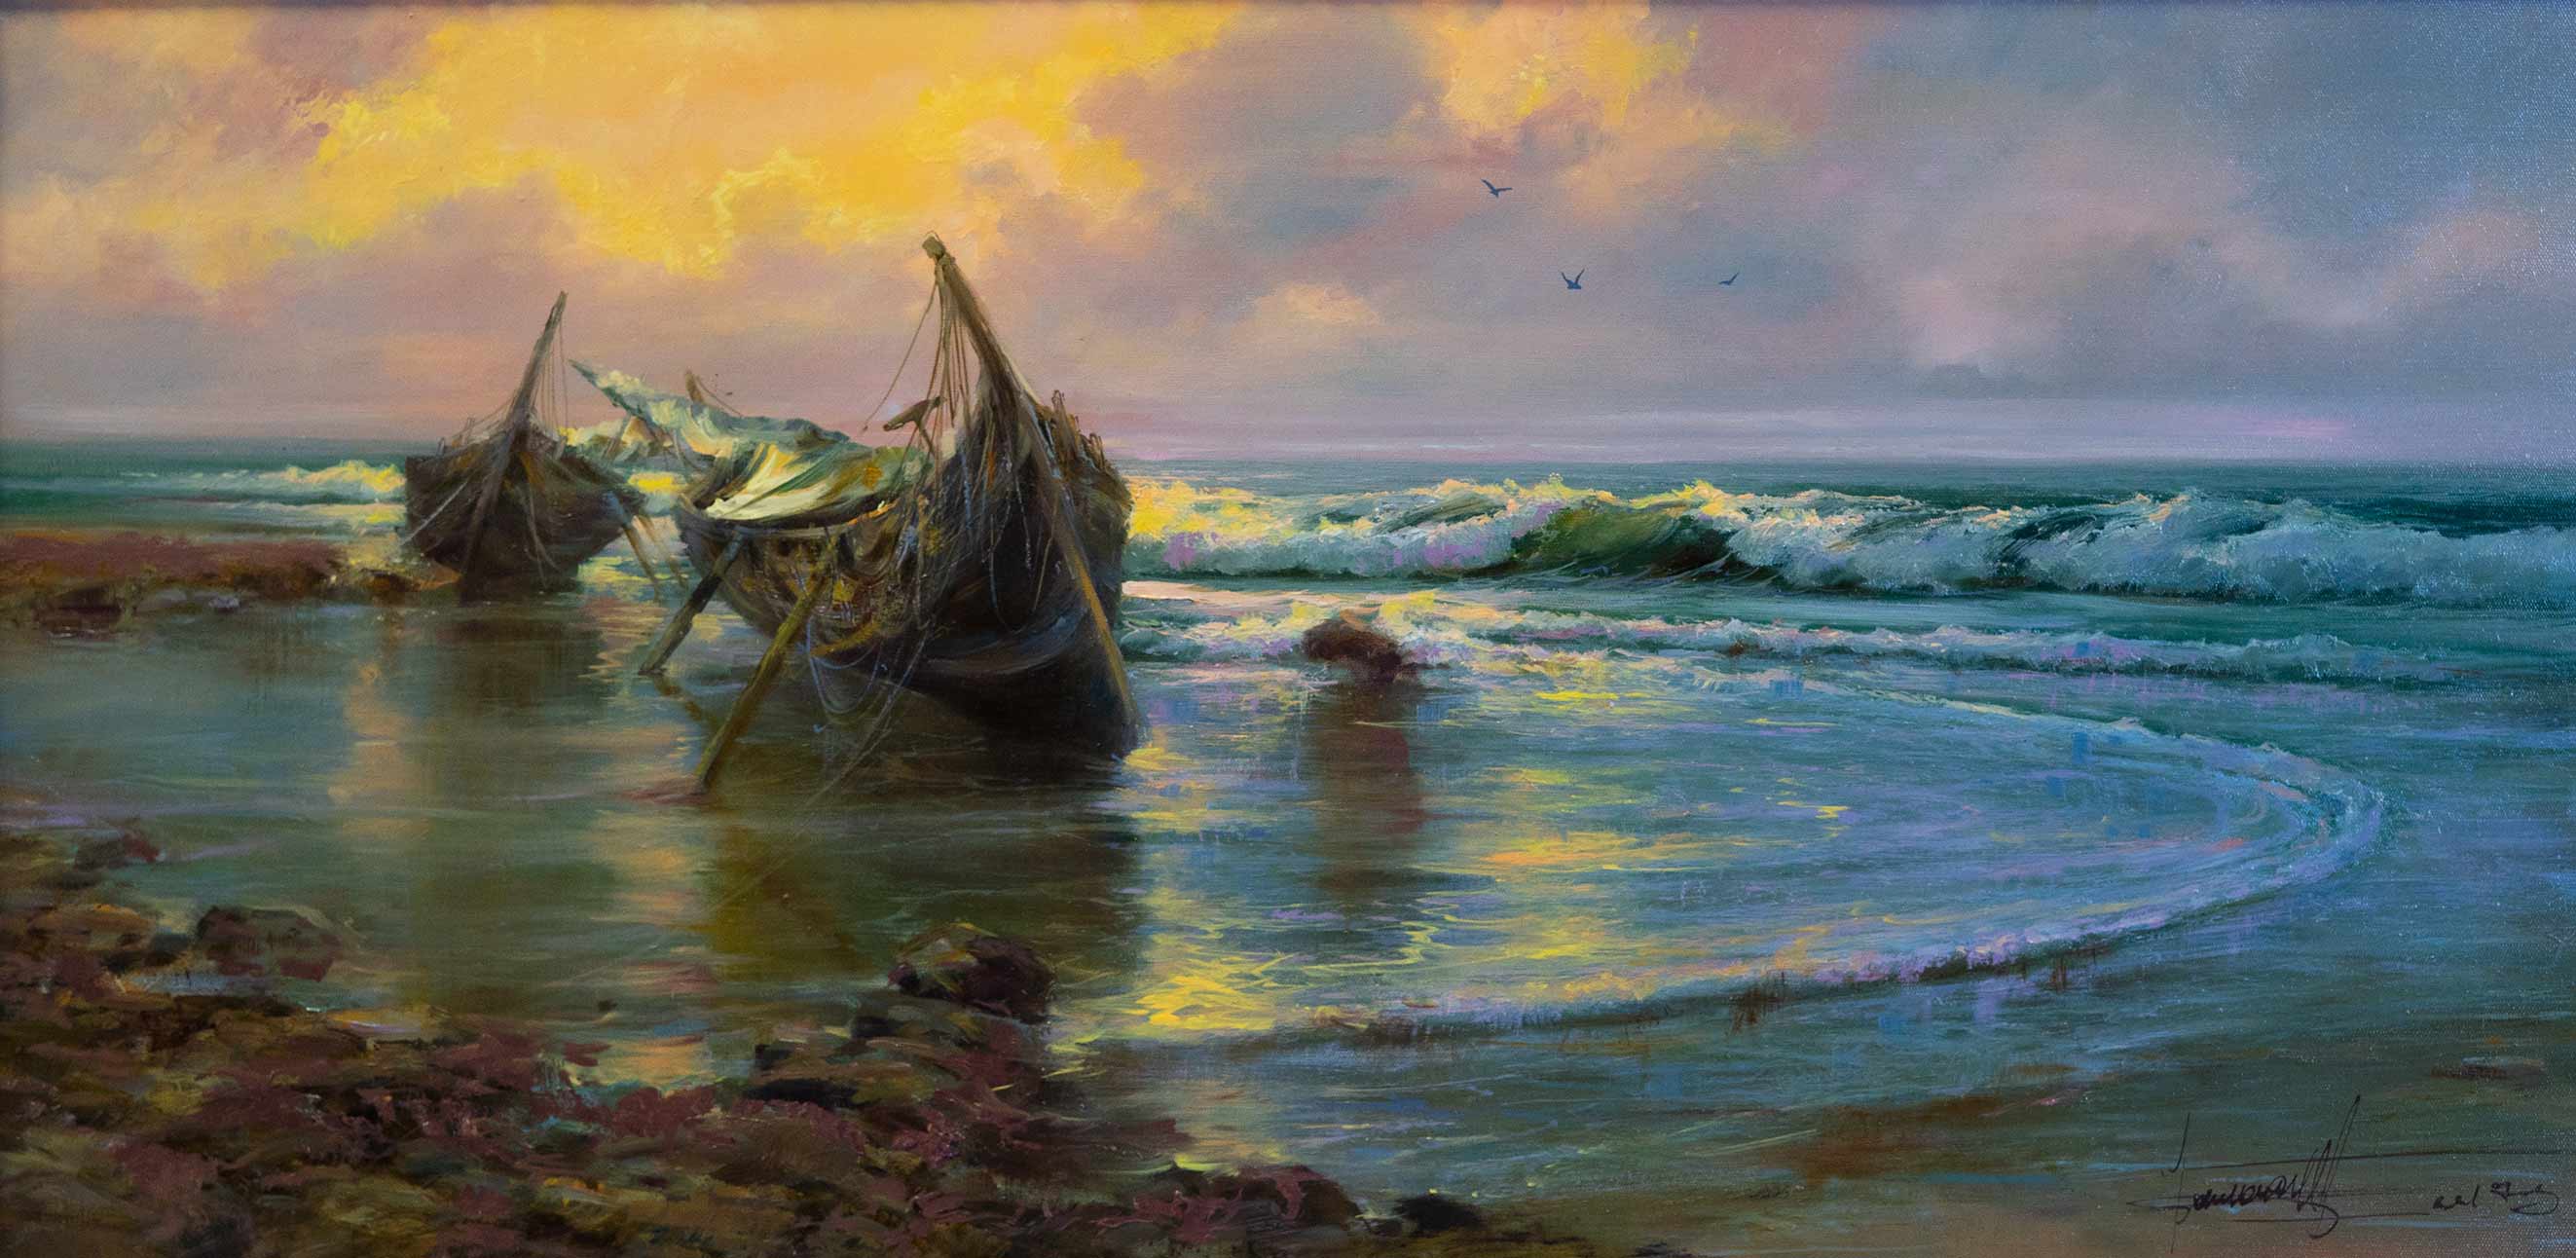 Little Boats - 1, Dmitry Balakhonov, Buy the painting Oil